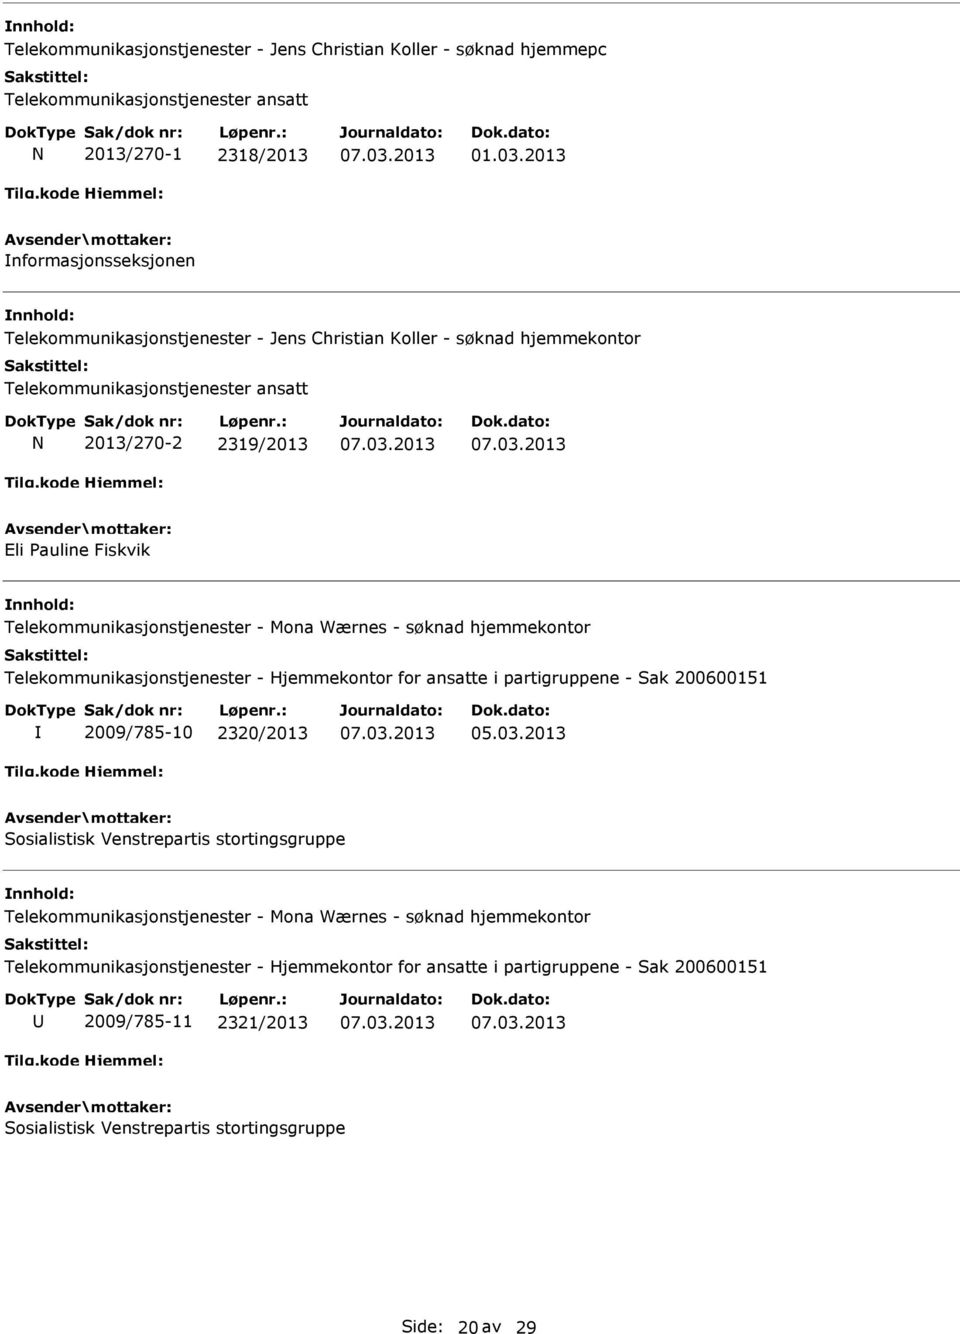 Telekommunikasjonstjenester - Mona Wærnes - søknad hjemmekontor Telekommunikasjonstjenester - Hjemmekontor for ansatte i partigruppene - Sak 200600151 2009/785-10 2320/2013 05.03.